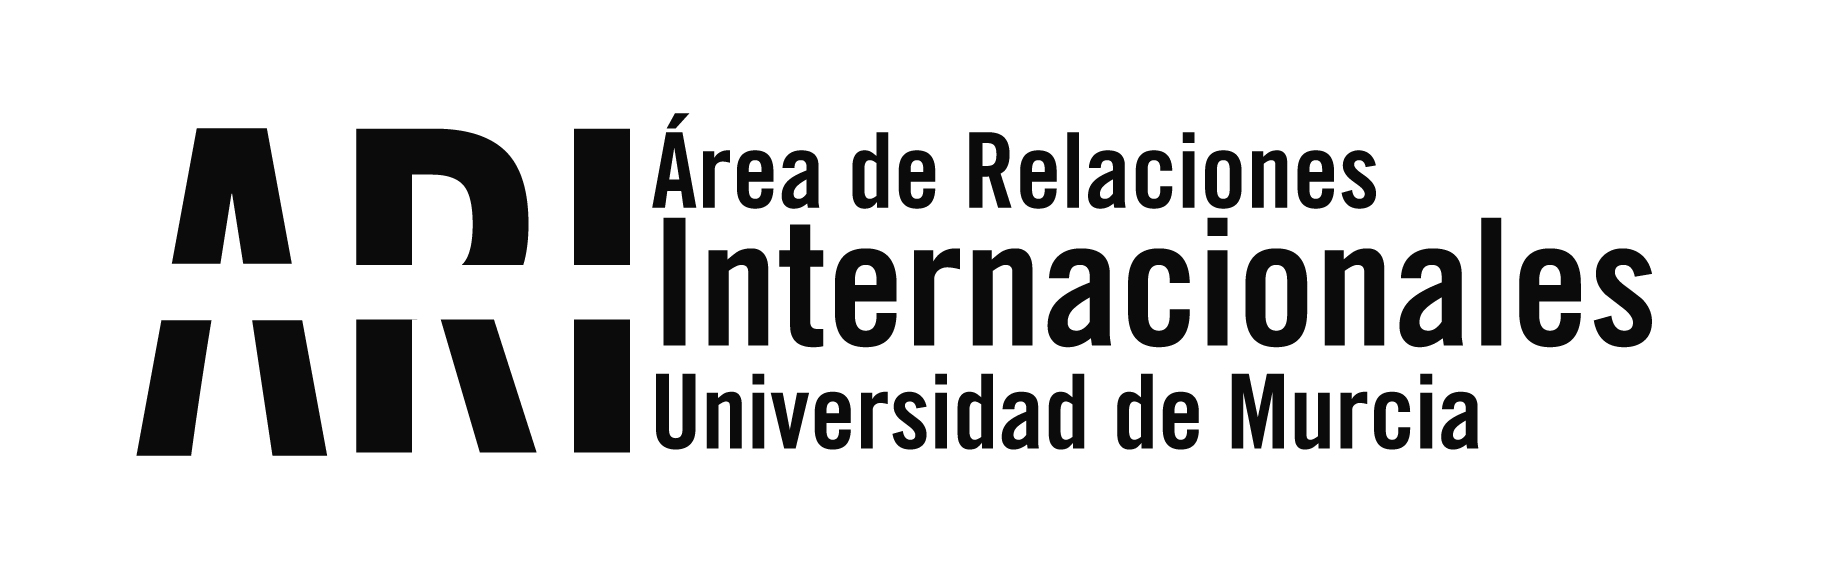 2013.09 Cifras Internacionalizacion 2012-2013 - Presentación - Eventos - Área de Relaciones Internacionales